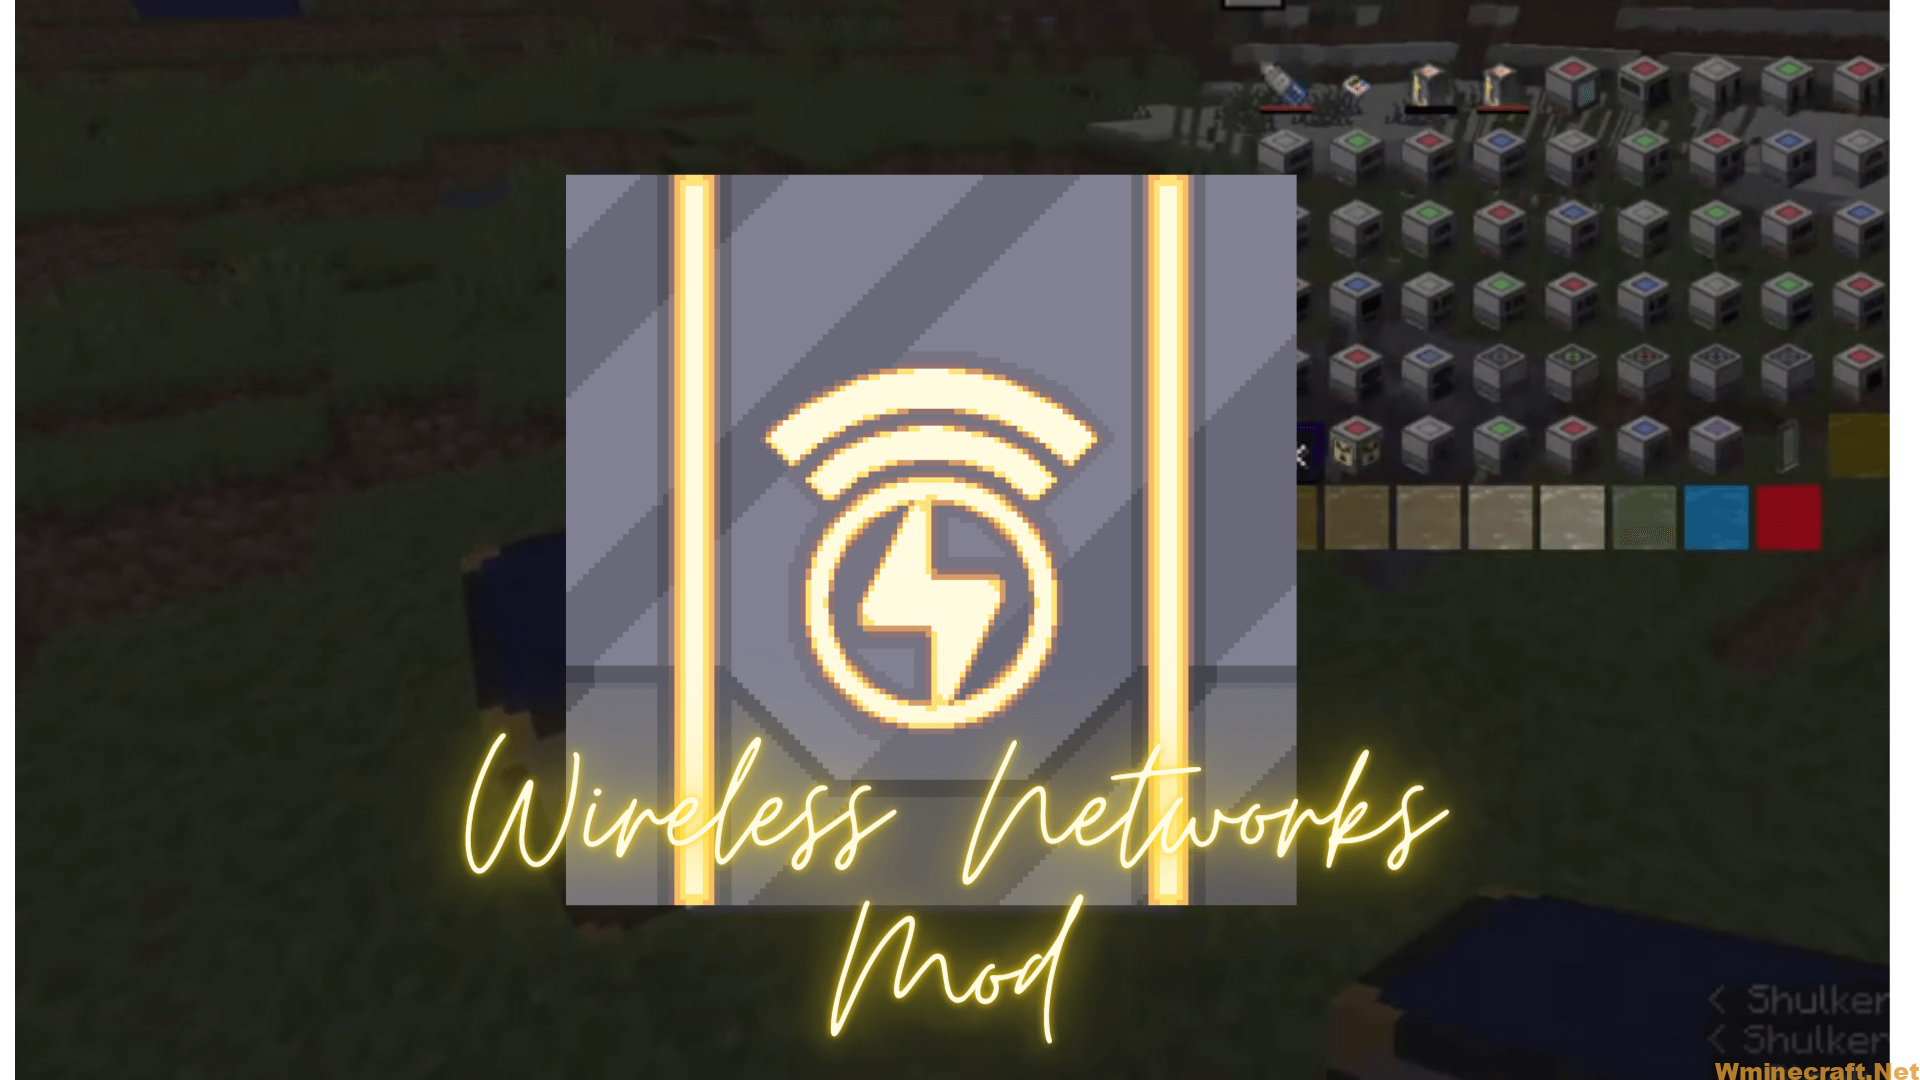 Wireless Networks Mod